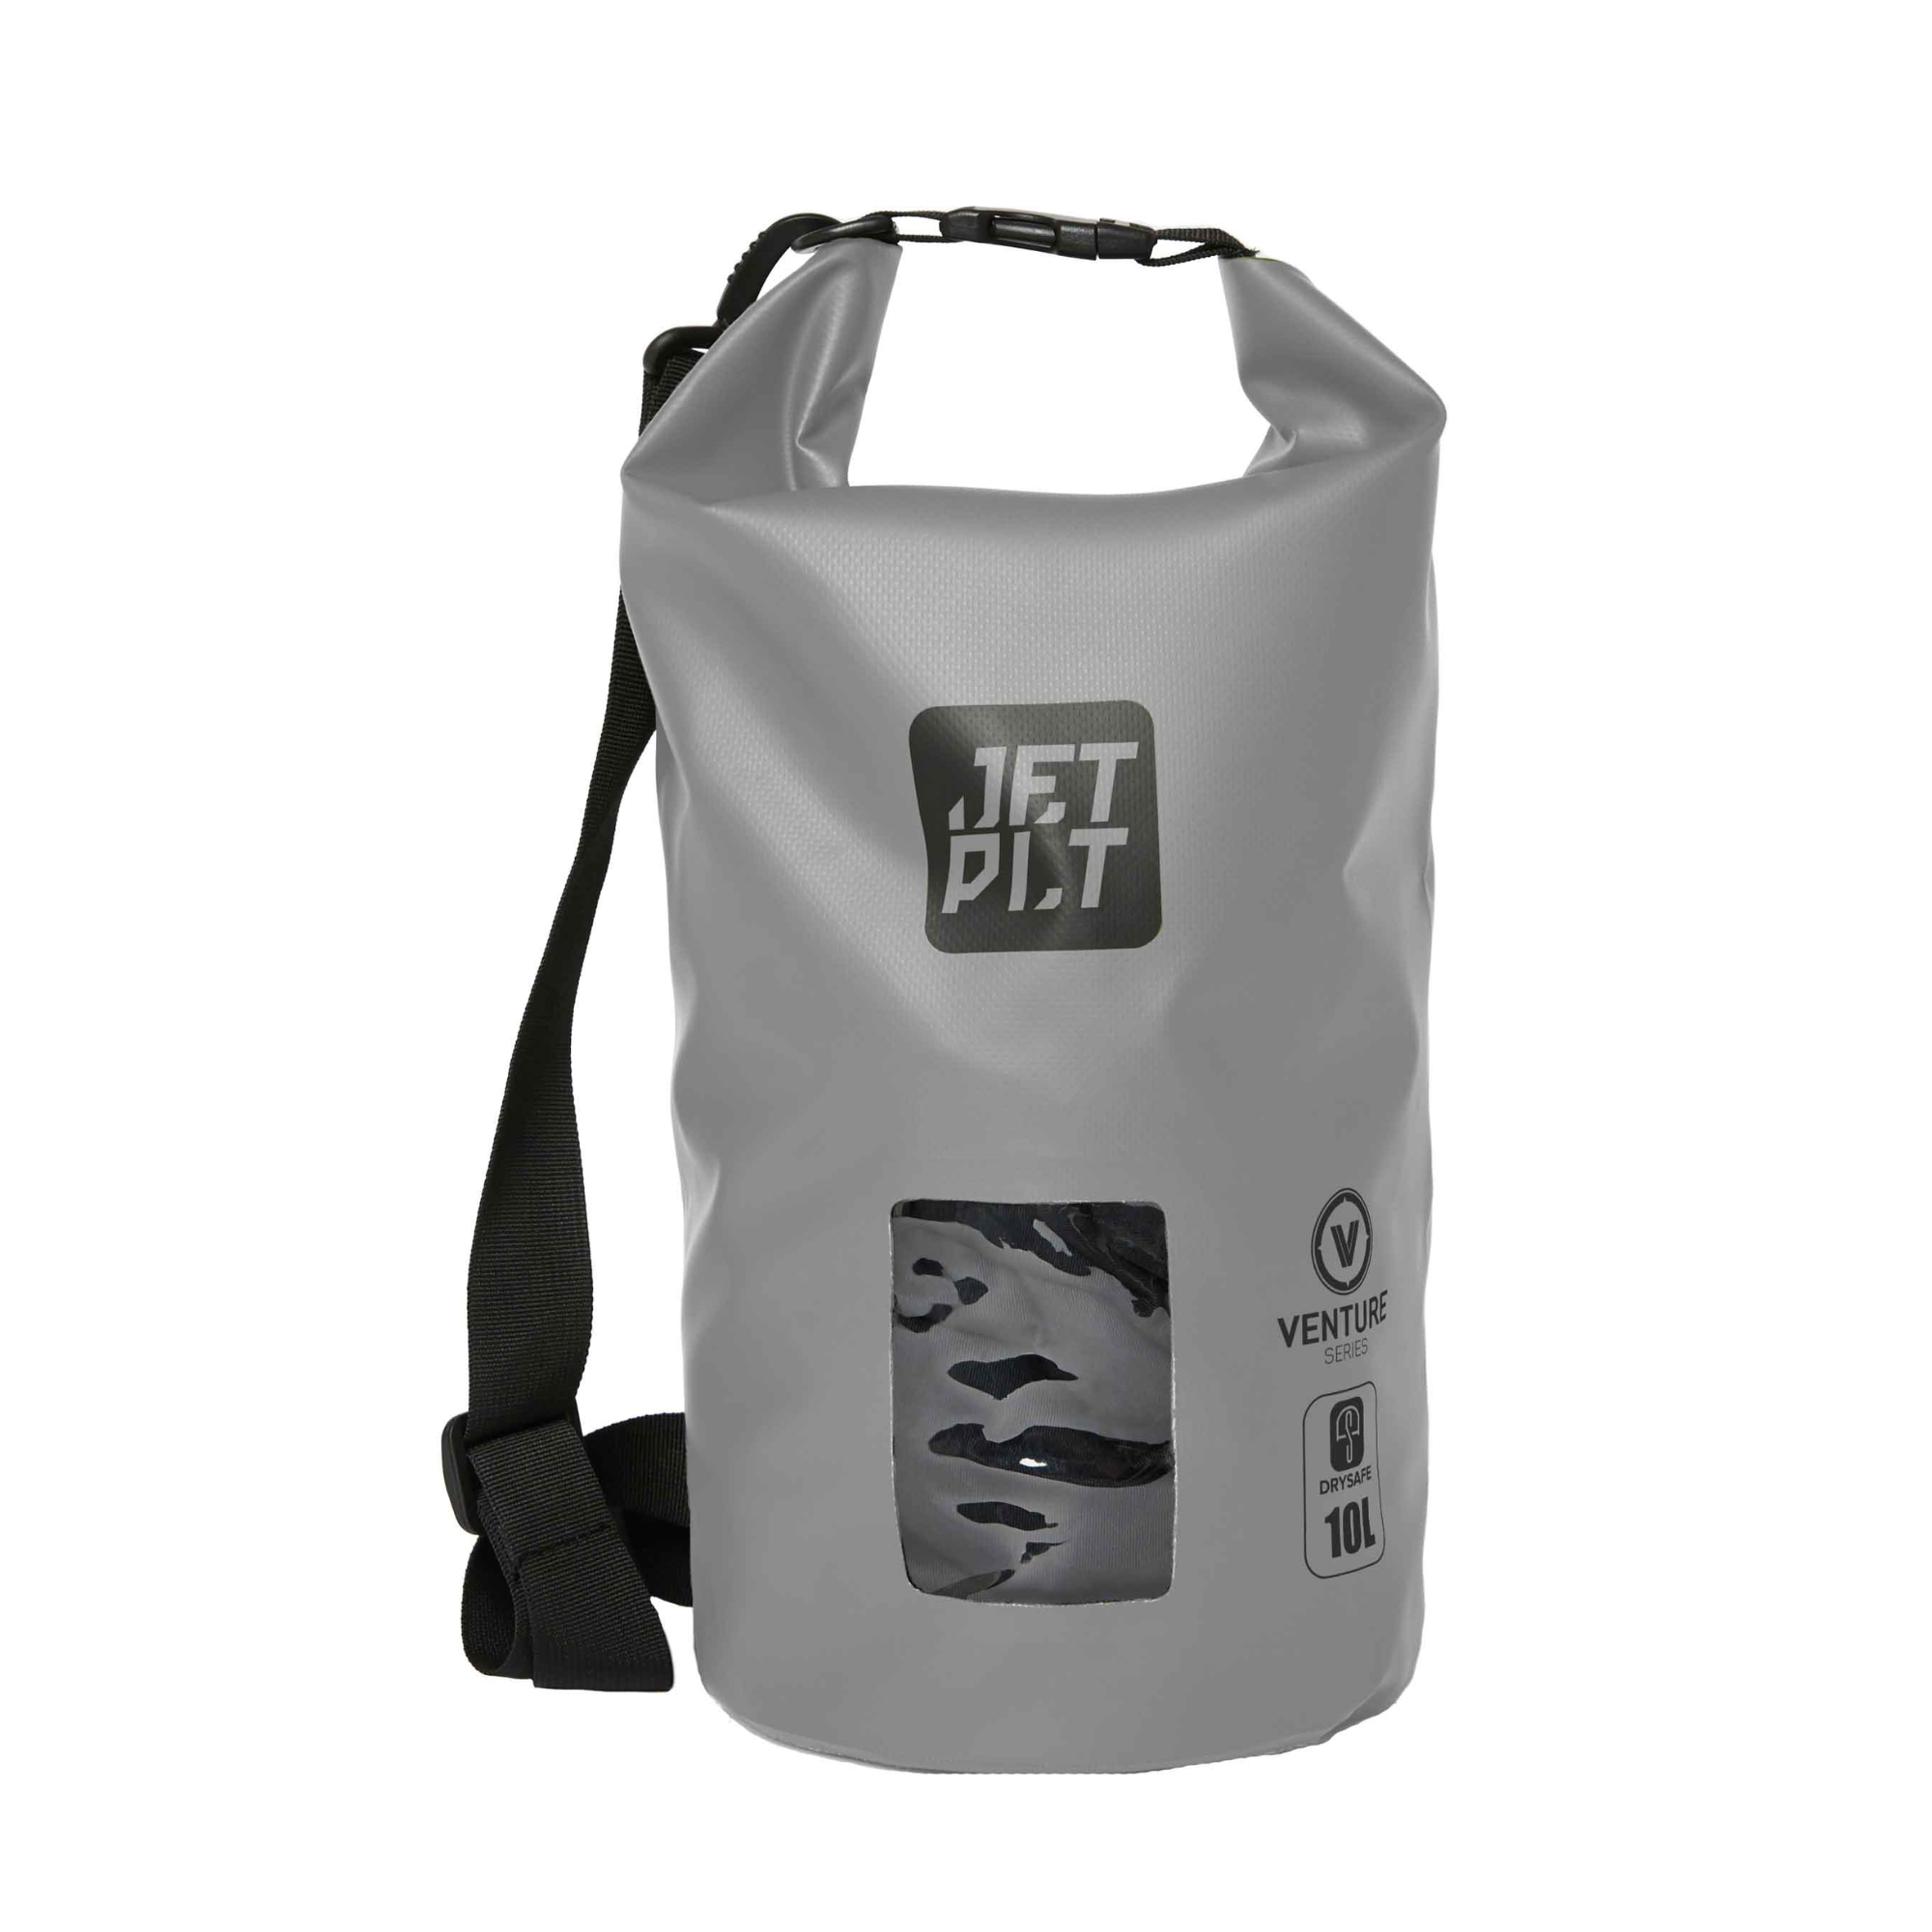 Jetpilot Venture 10L Drysafe Backpack - Grey